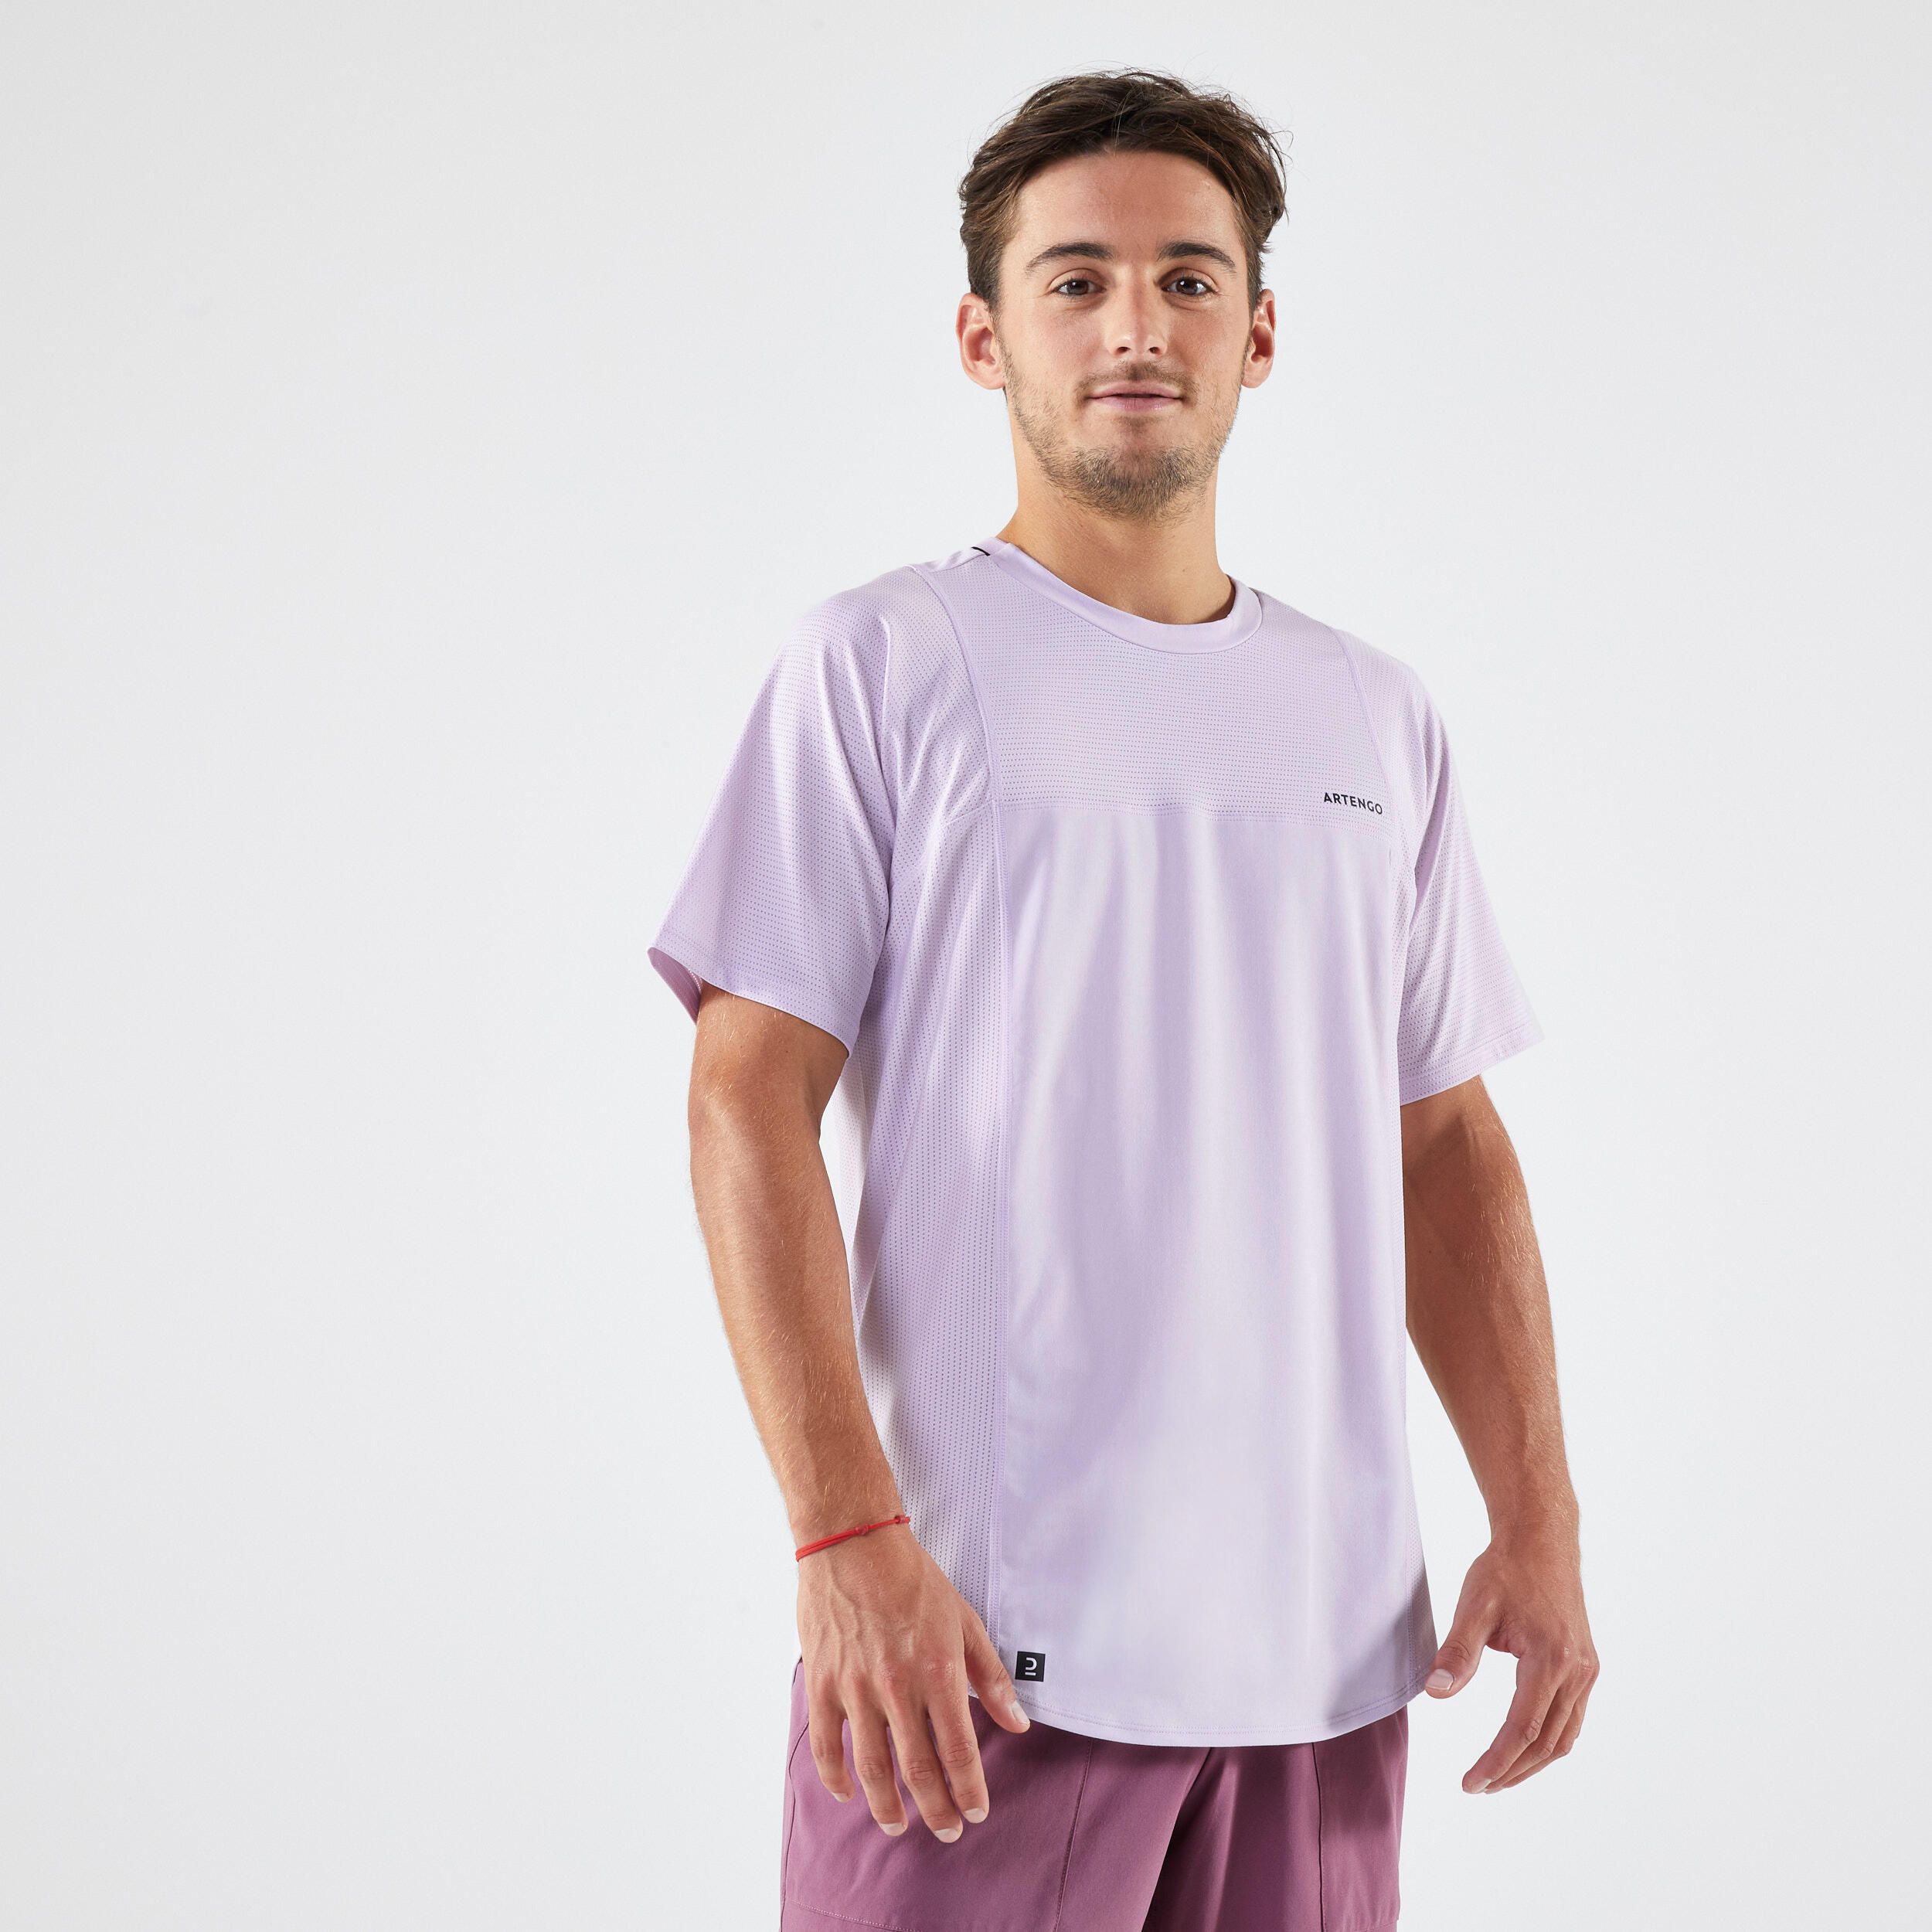 Men's Tennis T-Shirt